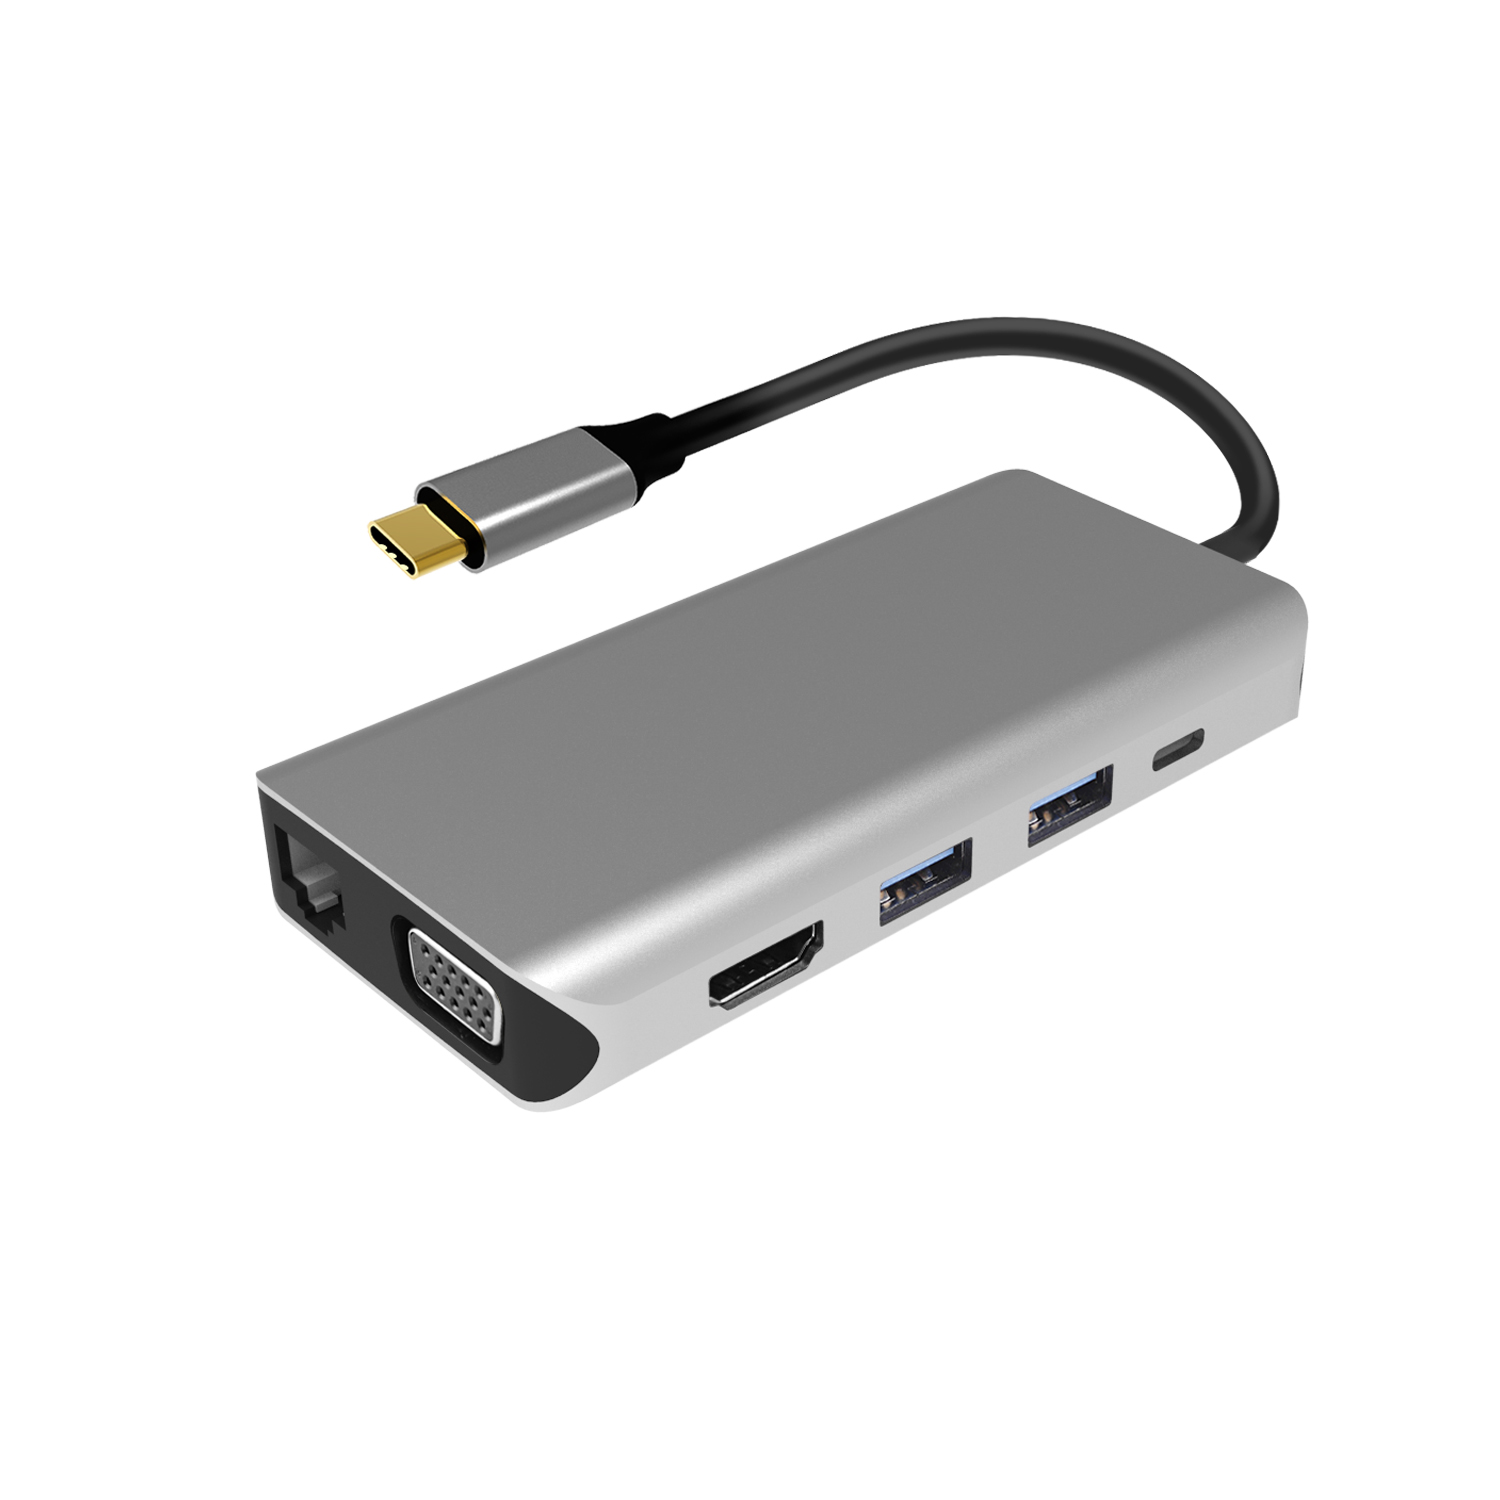 Adaptor multiport PNI MP10 USB-C la HDMI, VGA, 3 x USB 3.0, SD/TF, RJ45, audio 3.5, USB-C PD, 10 iesiri PNI imagine noua 2022